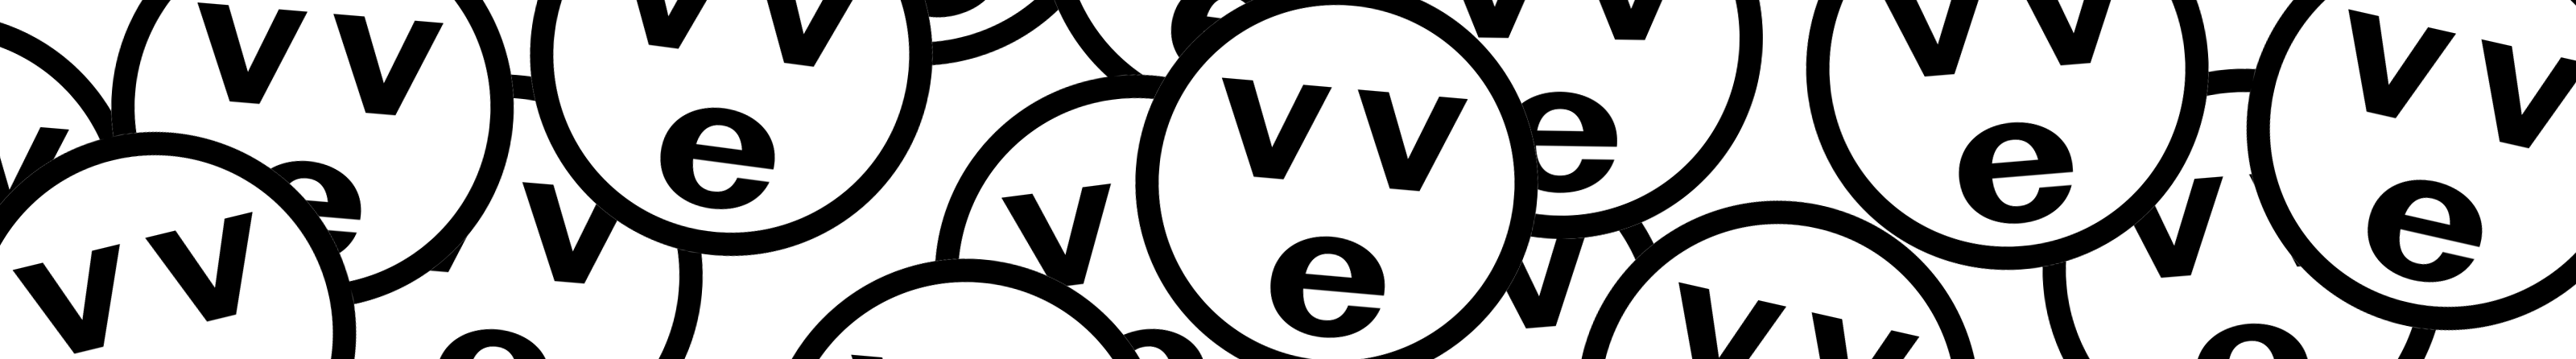 velvele ™'s profile banner